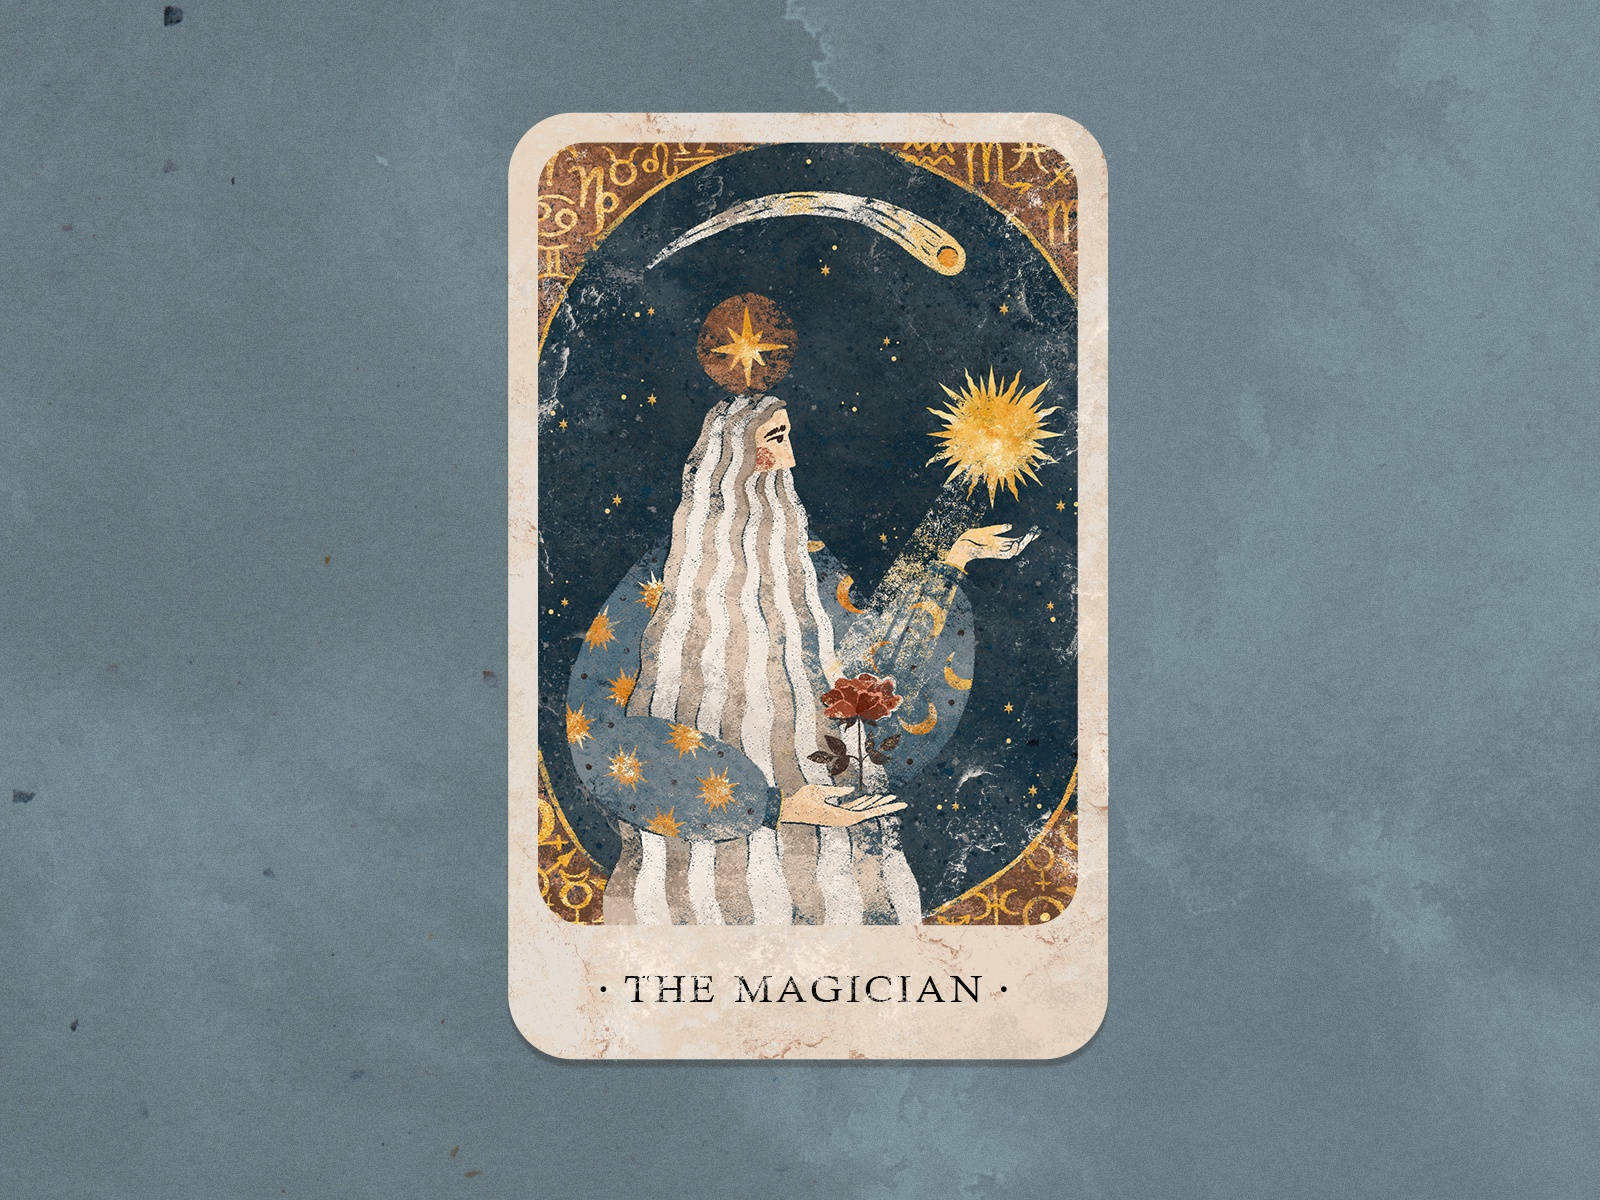 Tarotkortetmagikern (context: Talk About A Wallpaper Design Featuring The Image Of The Magician Tarot Card) Wallpaper